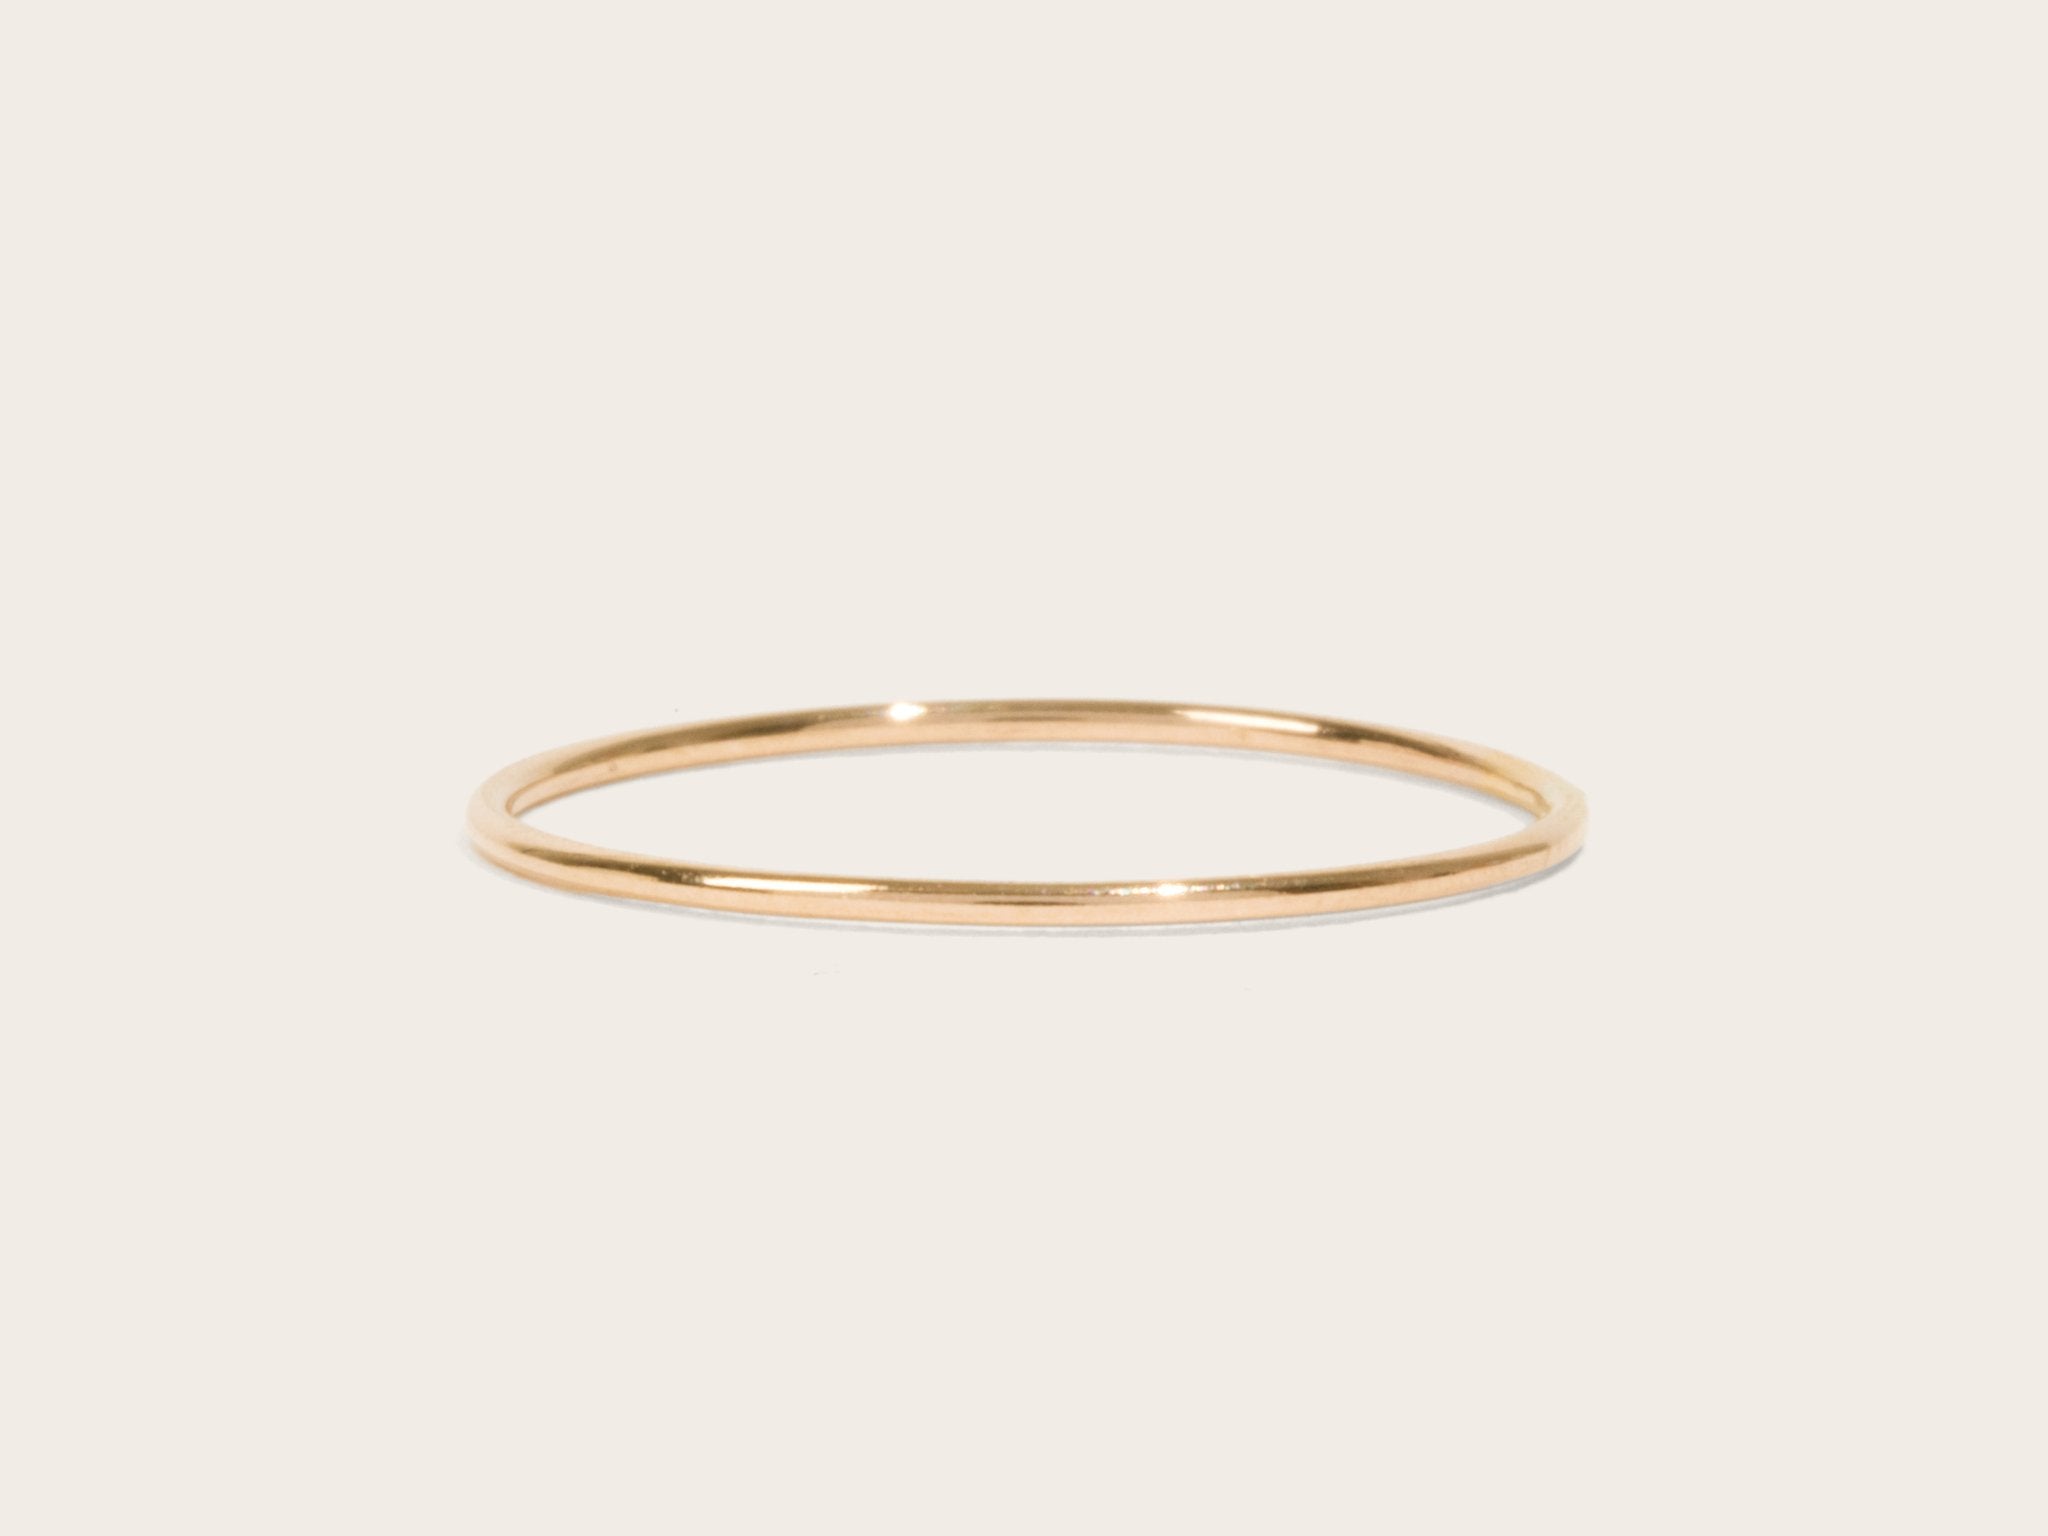 ring design for women gold | Ring design for female, Simple ring design, Gold  ring designs